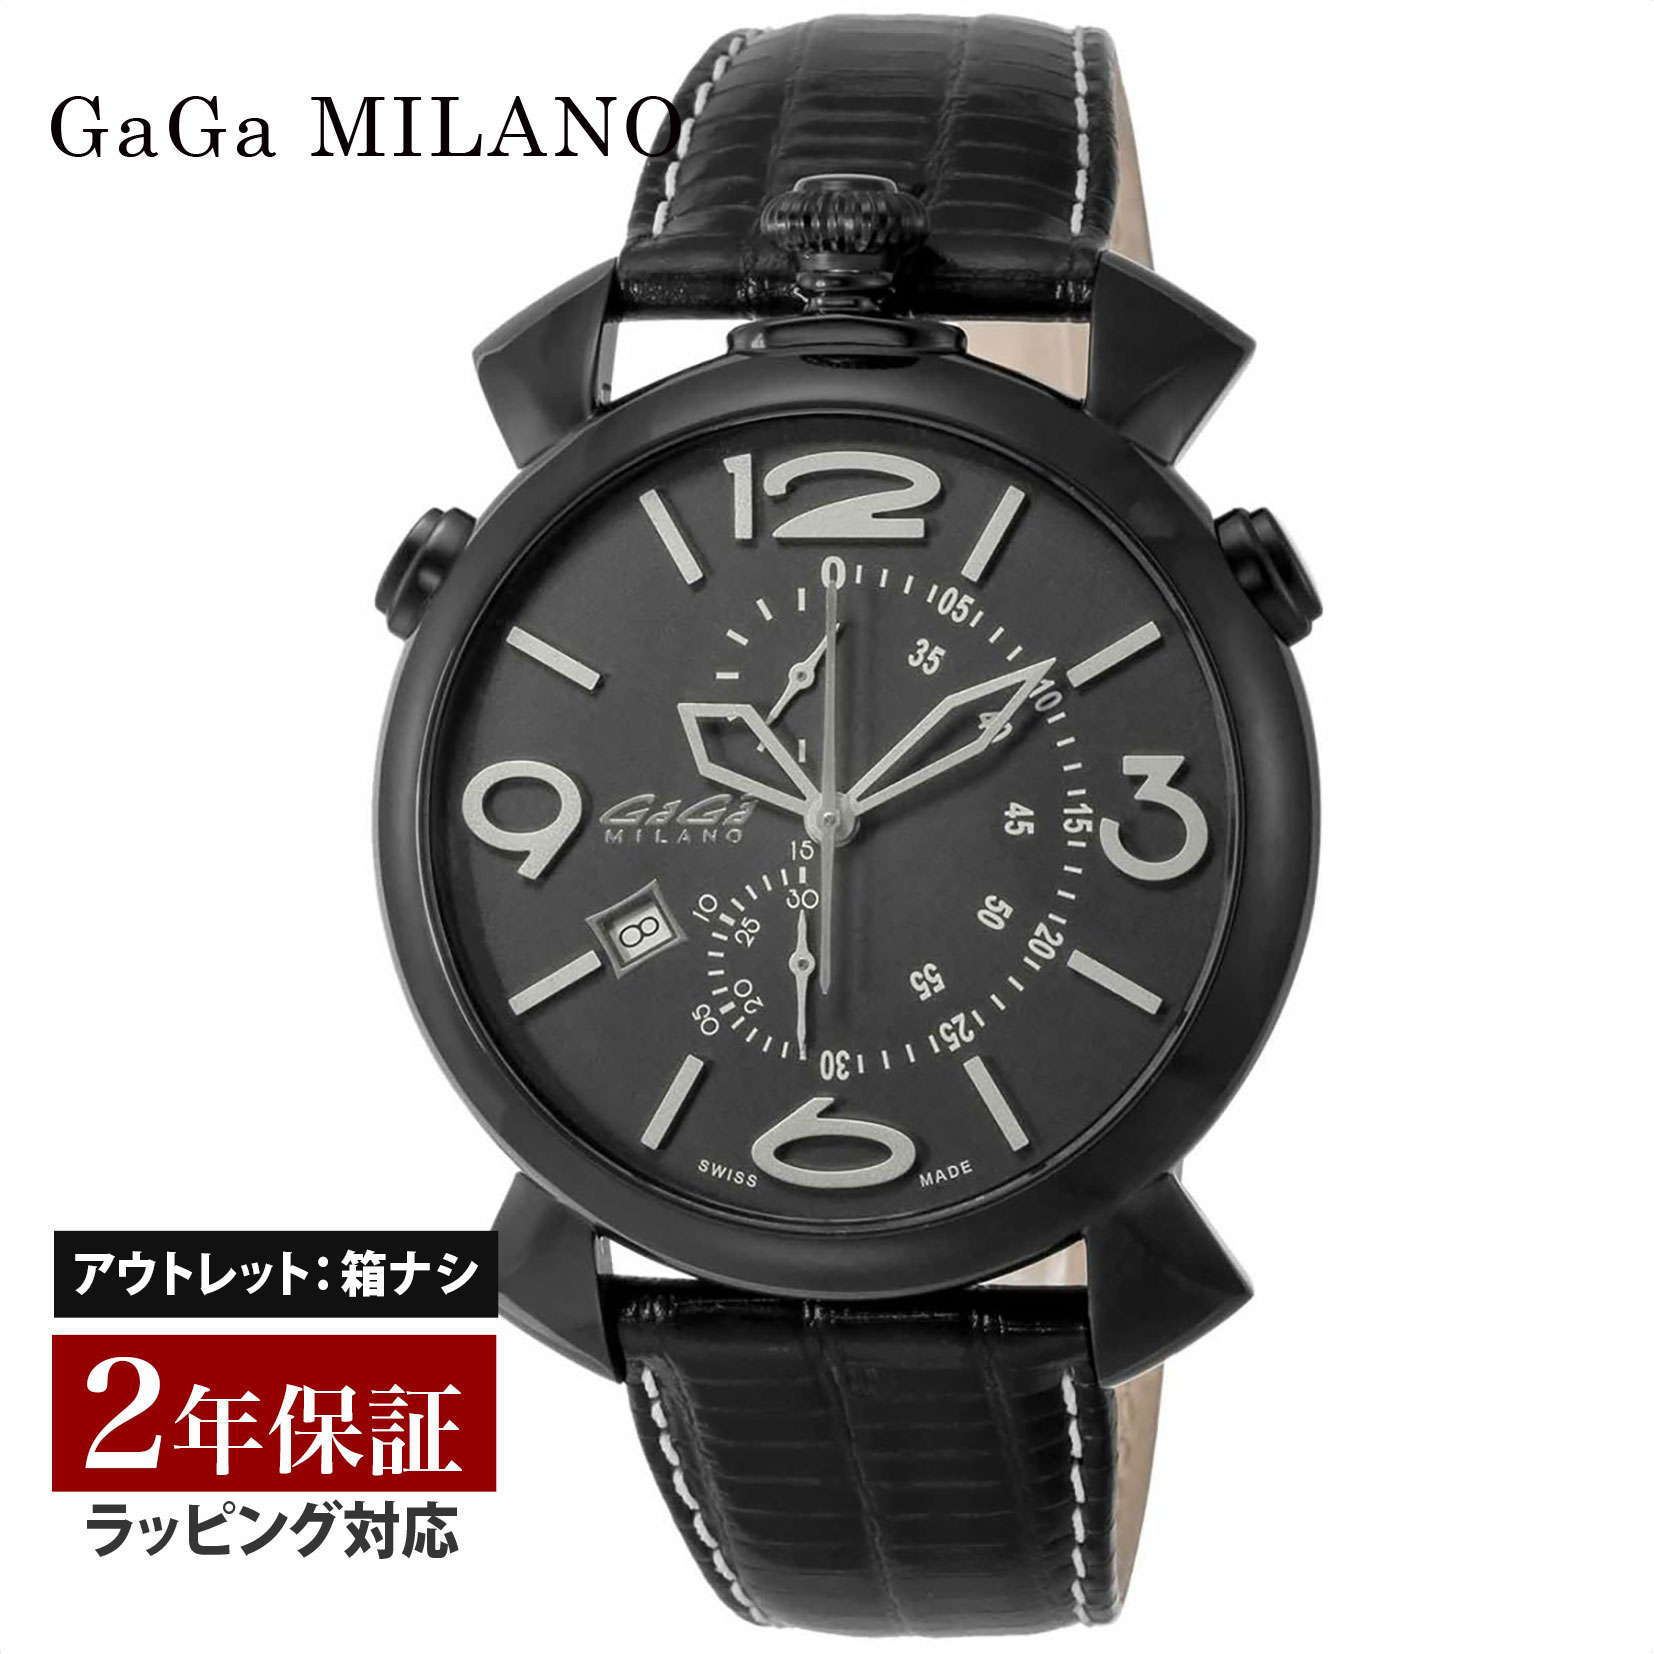 【クリアランスSALE】 GaGaMILAN ガガミラノ THIN CHRONO 46MM メンズ スイス製 ガガ ミラノ クォーツ ブラック 5099.01BK-NEW-N 腕時計 高級腕時計 